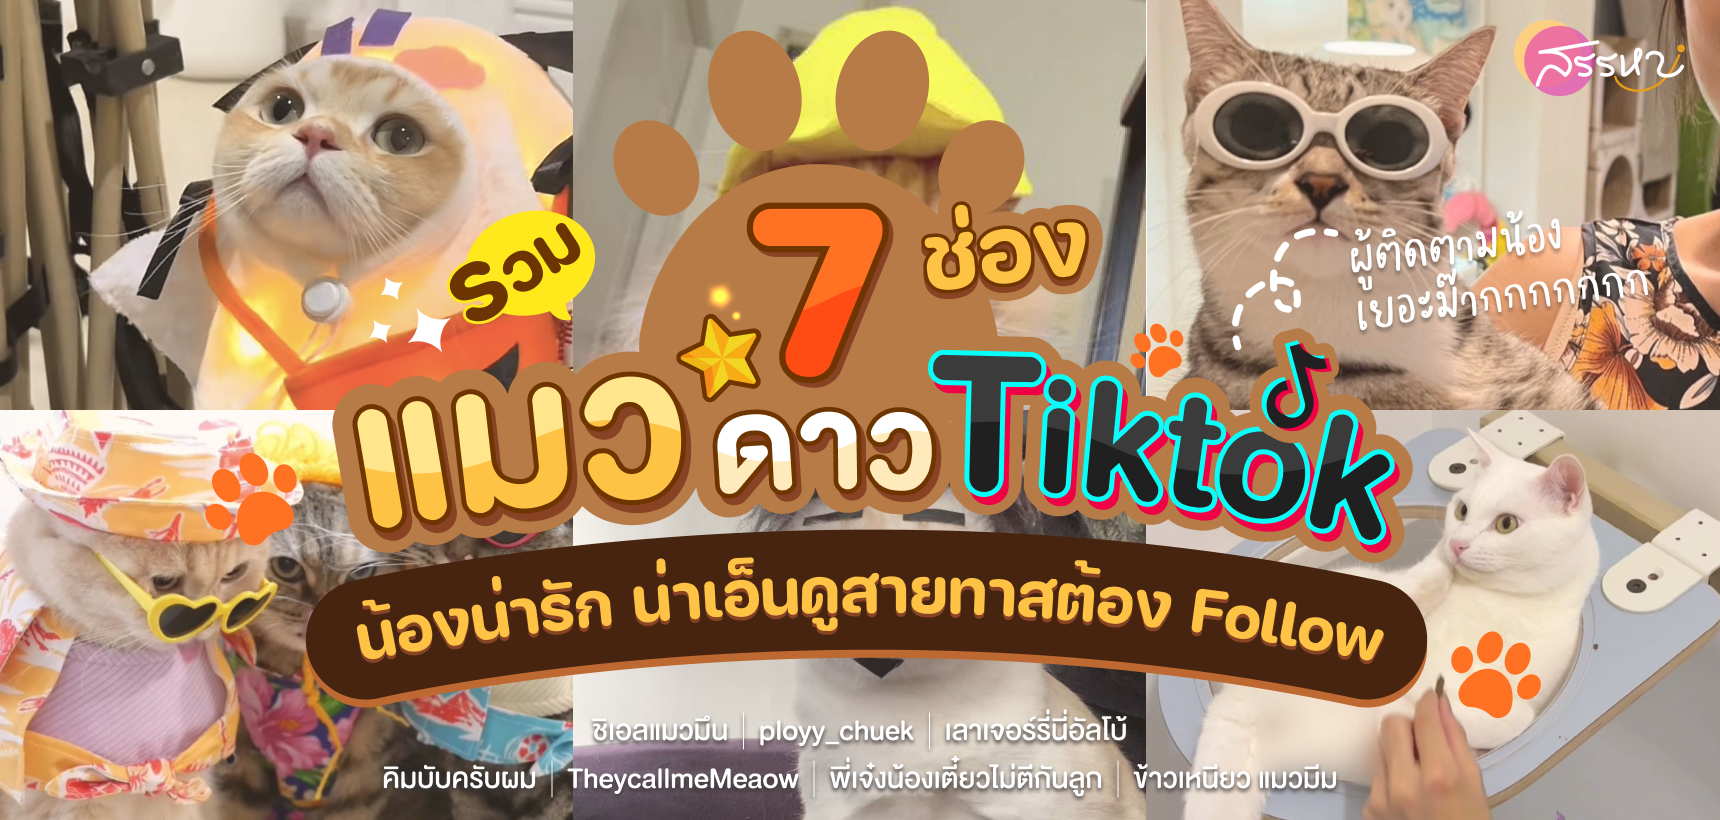 รวม 7 ช่องแมว ดาวTIKTOK ผู้ติดตามมากสุดในไทย น้องน่ารักน่าเอ็นดูสายทาสต้องFollow